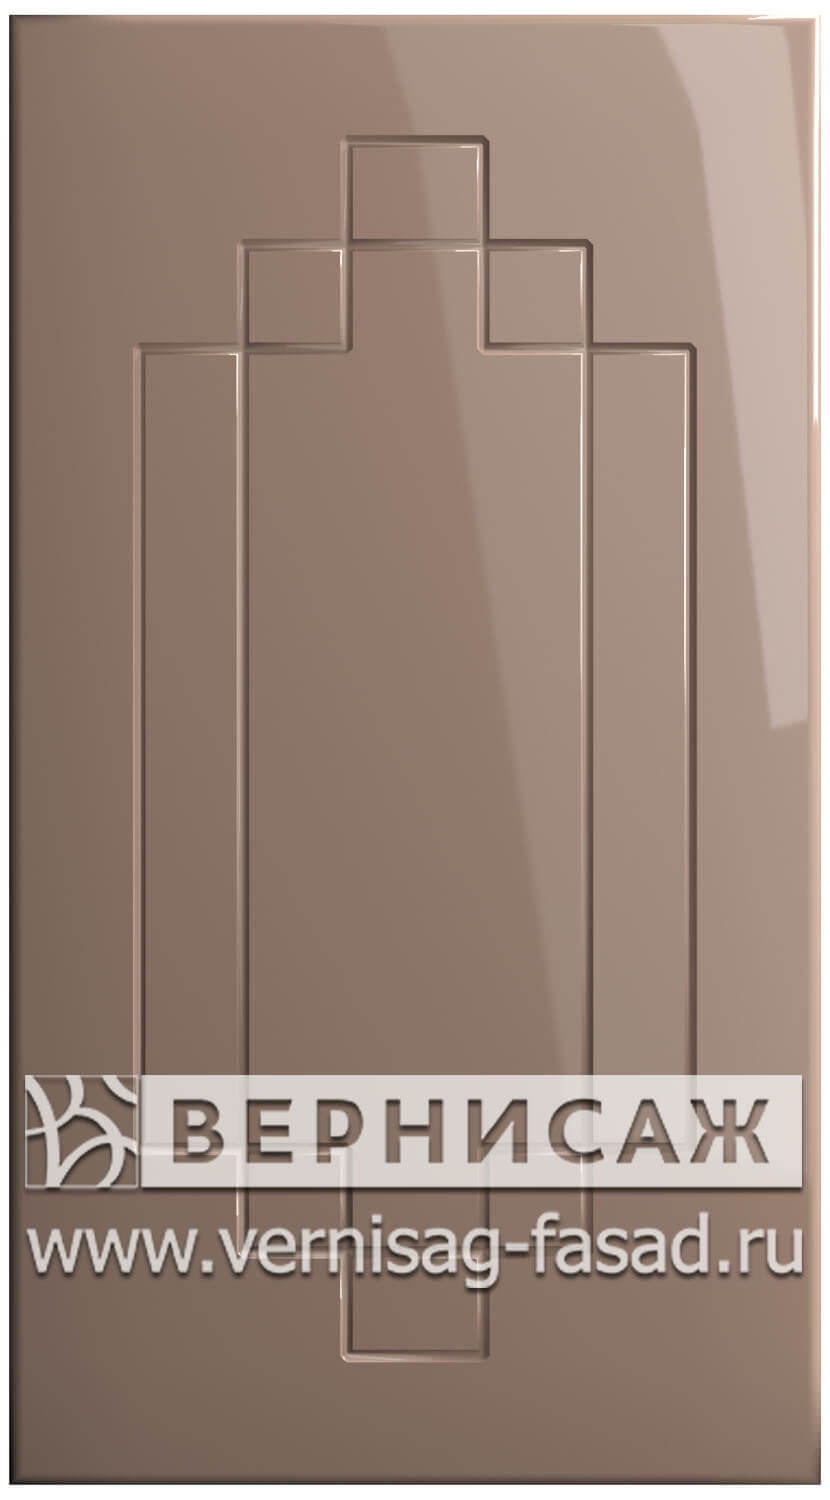  Фасады в пленке ПВХ, Фрезеровка № 37, цвет Мокко глянец